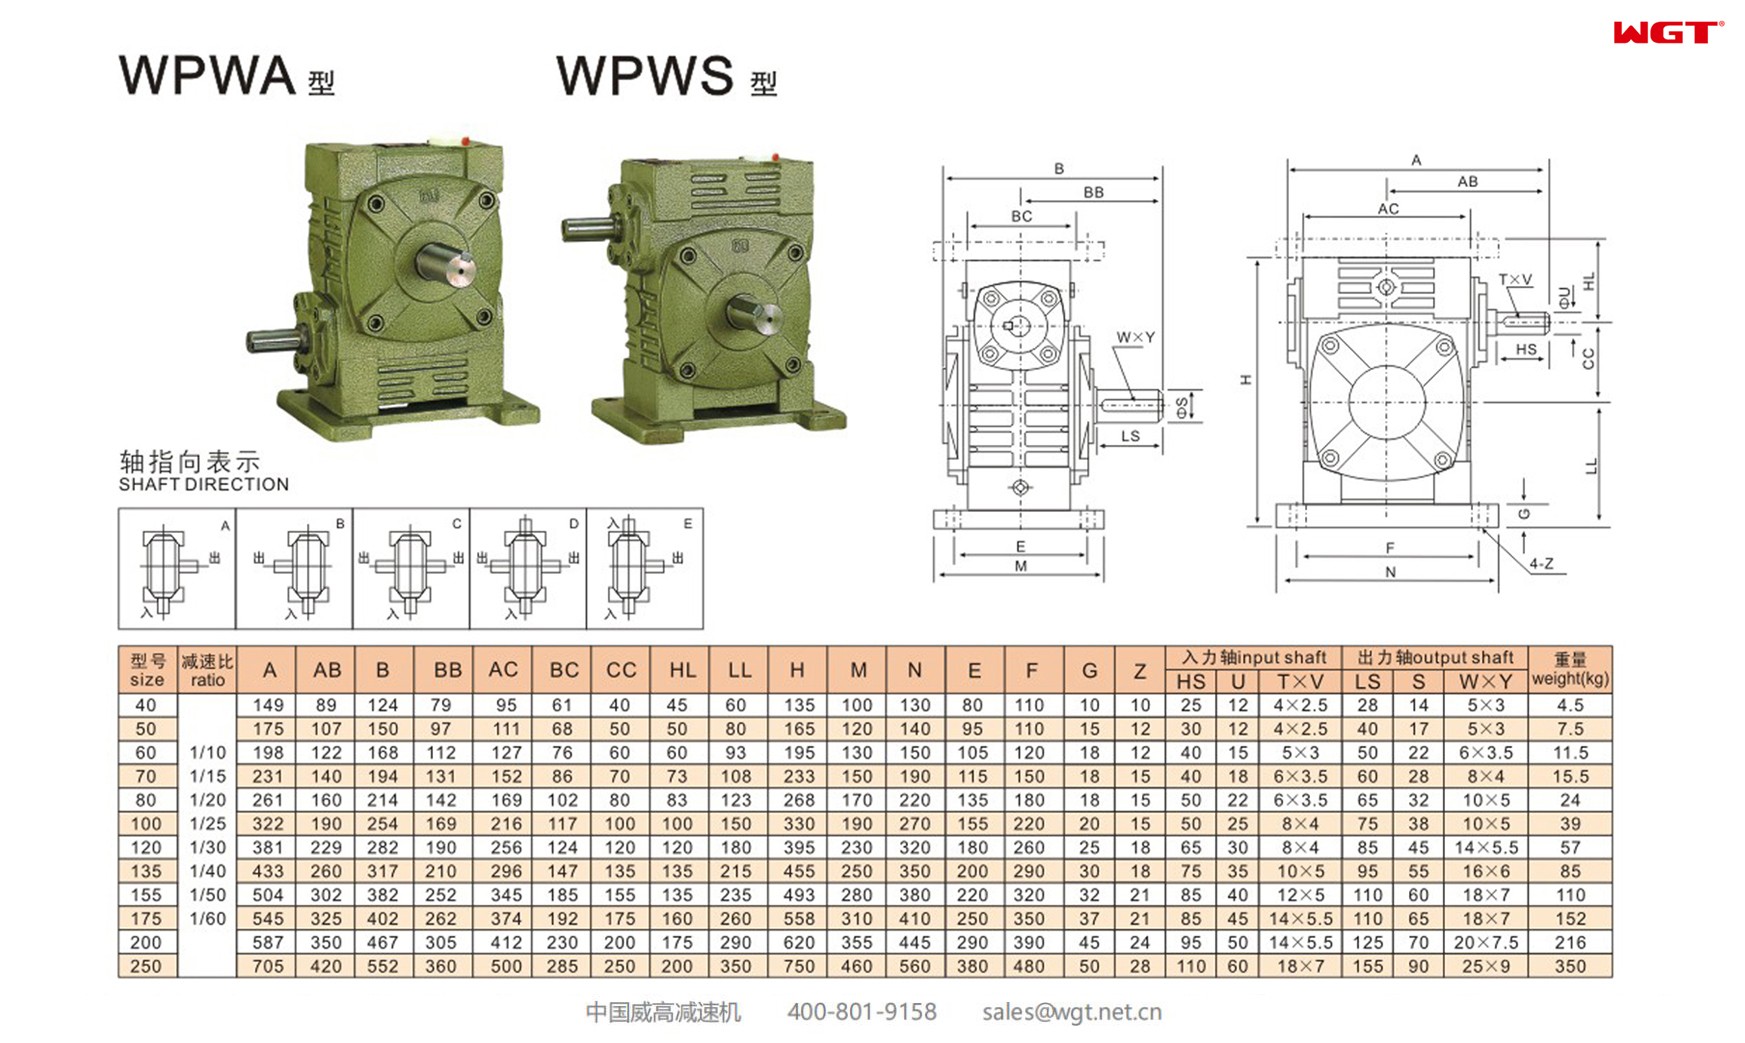 WPWA135 worm gear reducer universal speed reducer